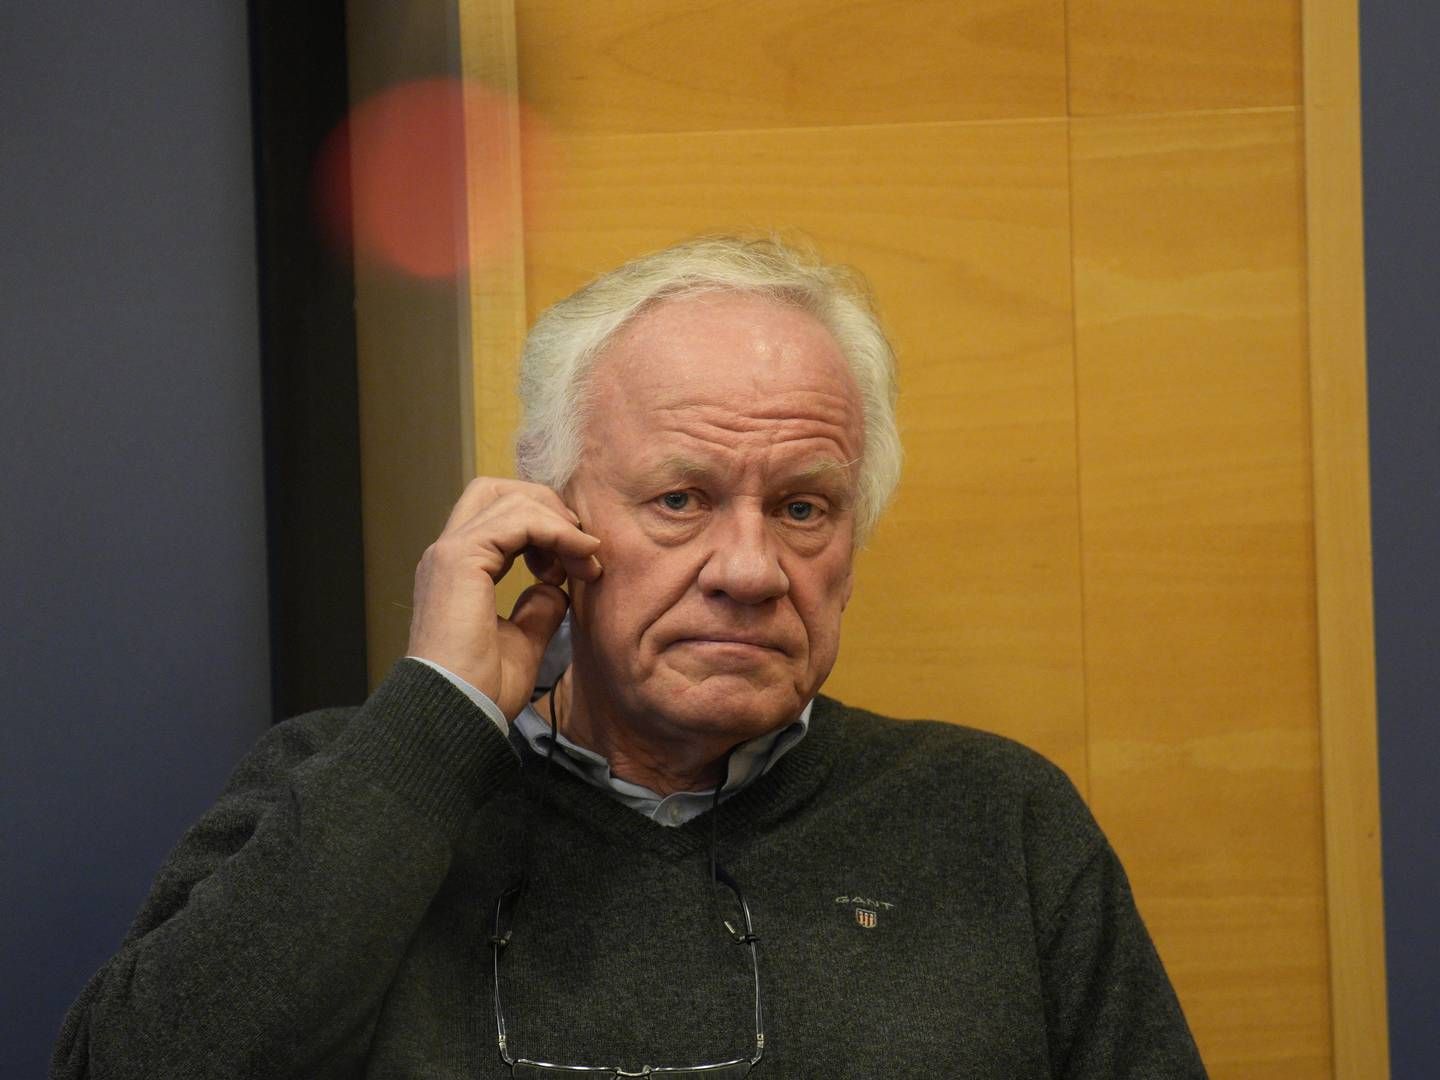 KLAR TALE: Bistandsadvokat Sigurd J. Klomsæt mener Mehl må trekke seg etter hva som kommer frem i evalueringsrapporten etter Oslo-skytingen. | Photo: Jan Kåre Ness/NTB